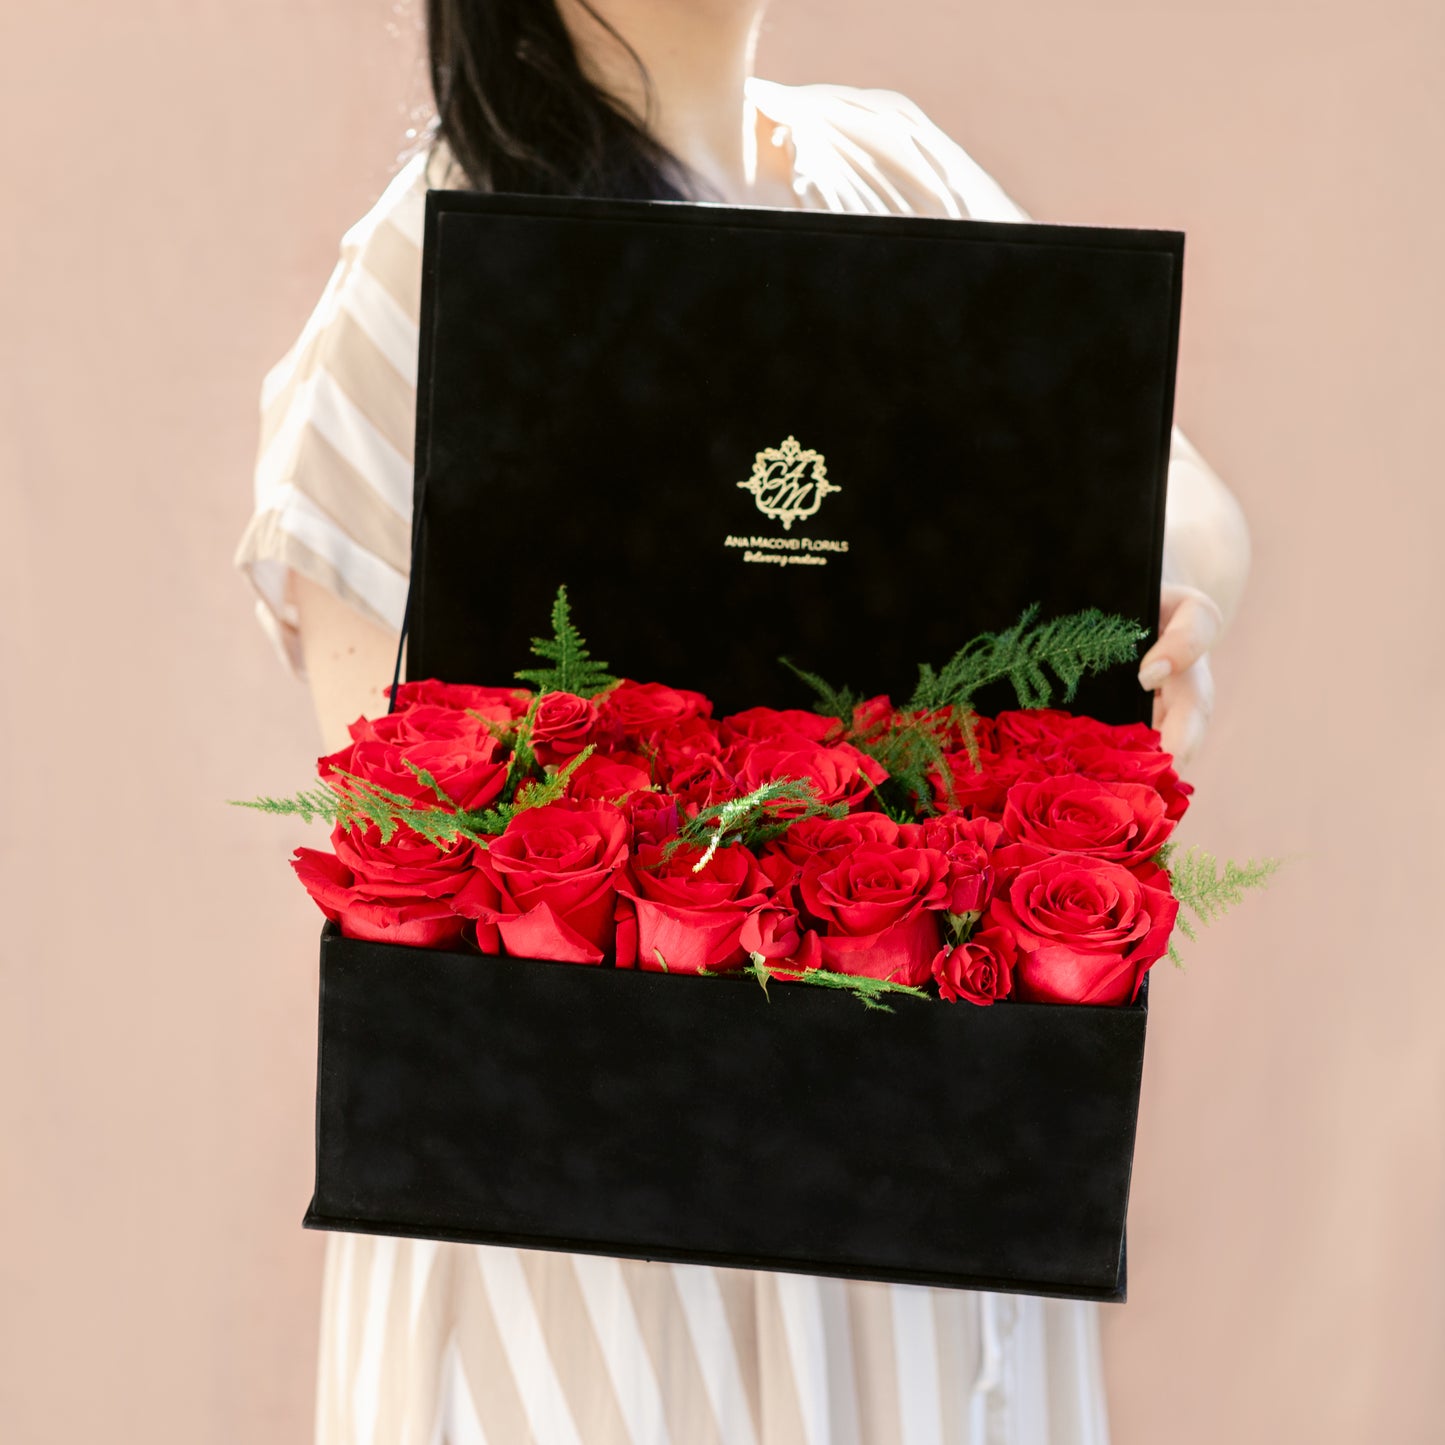 Cutia mare cu Trandafiri si Miniroze rosii